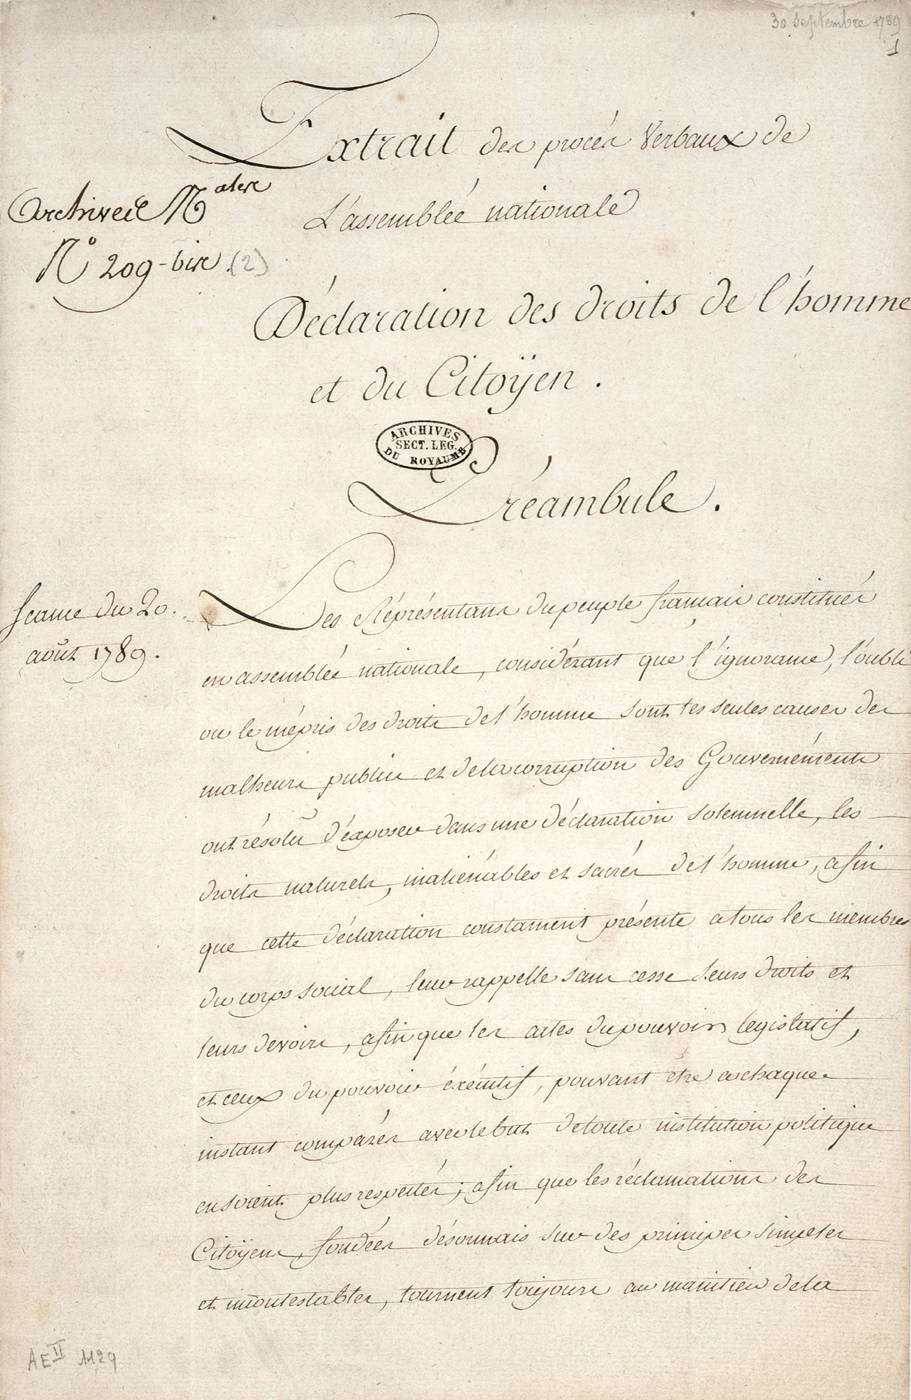 Déclaration des droits de l'homme et du citoyen, 26 août 1789.